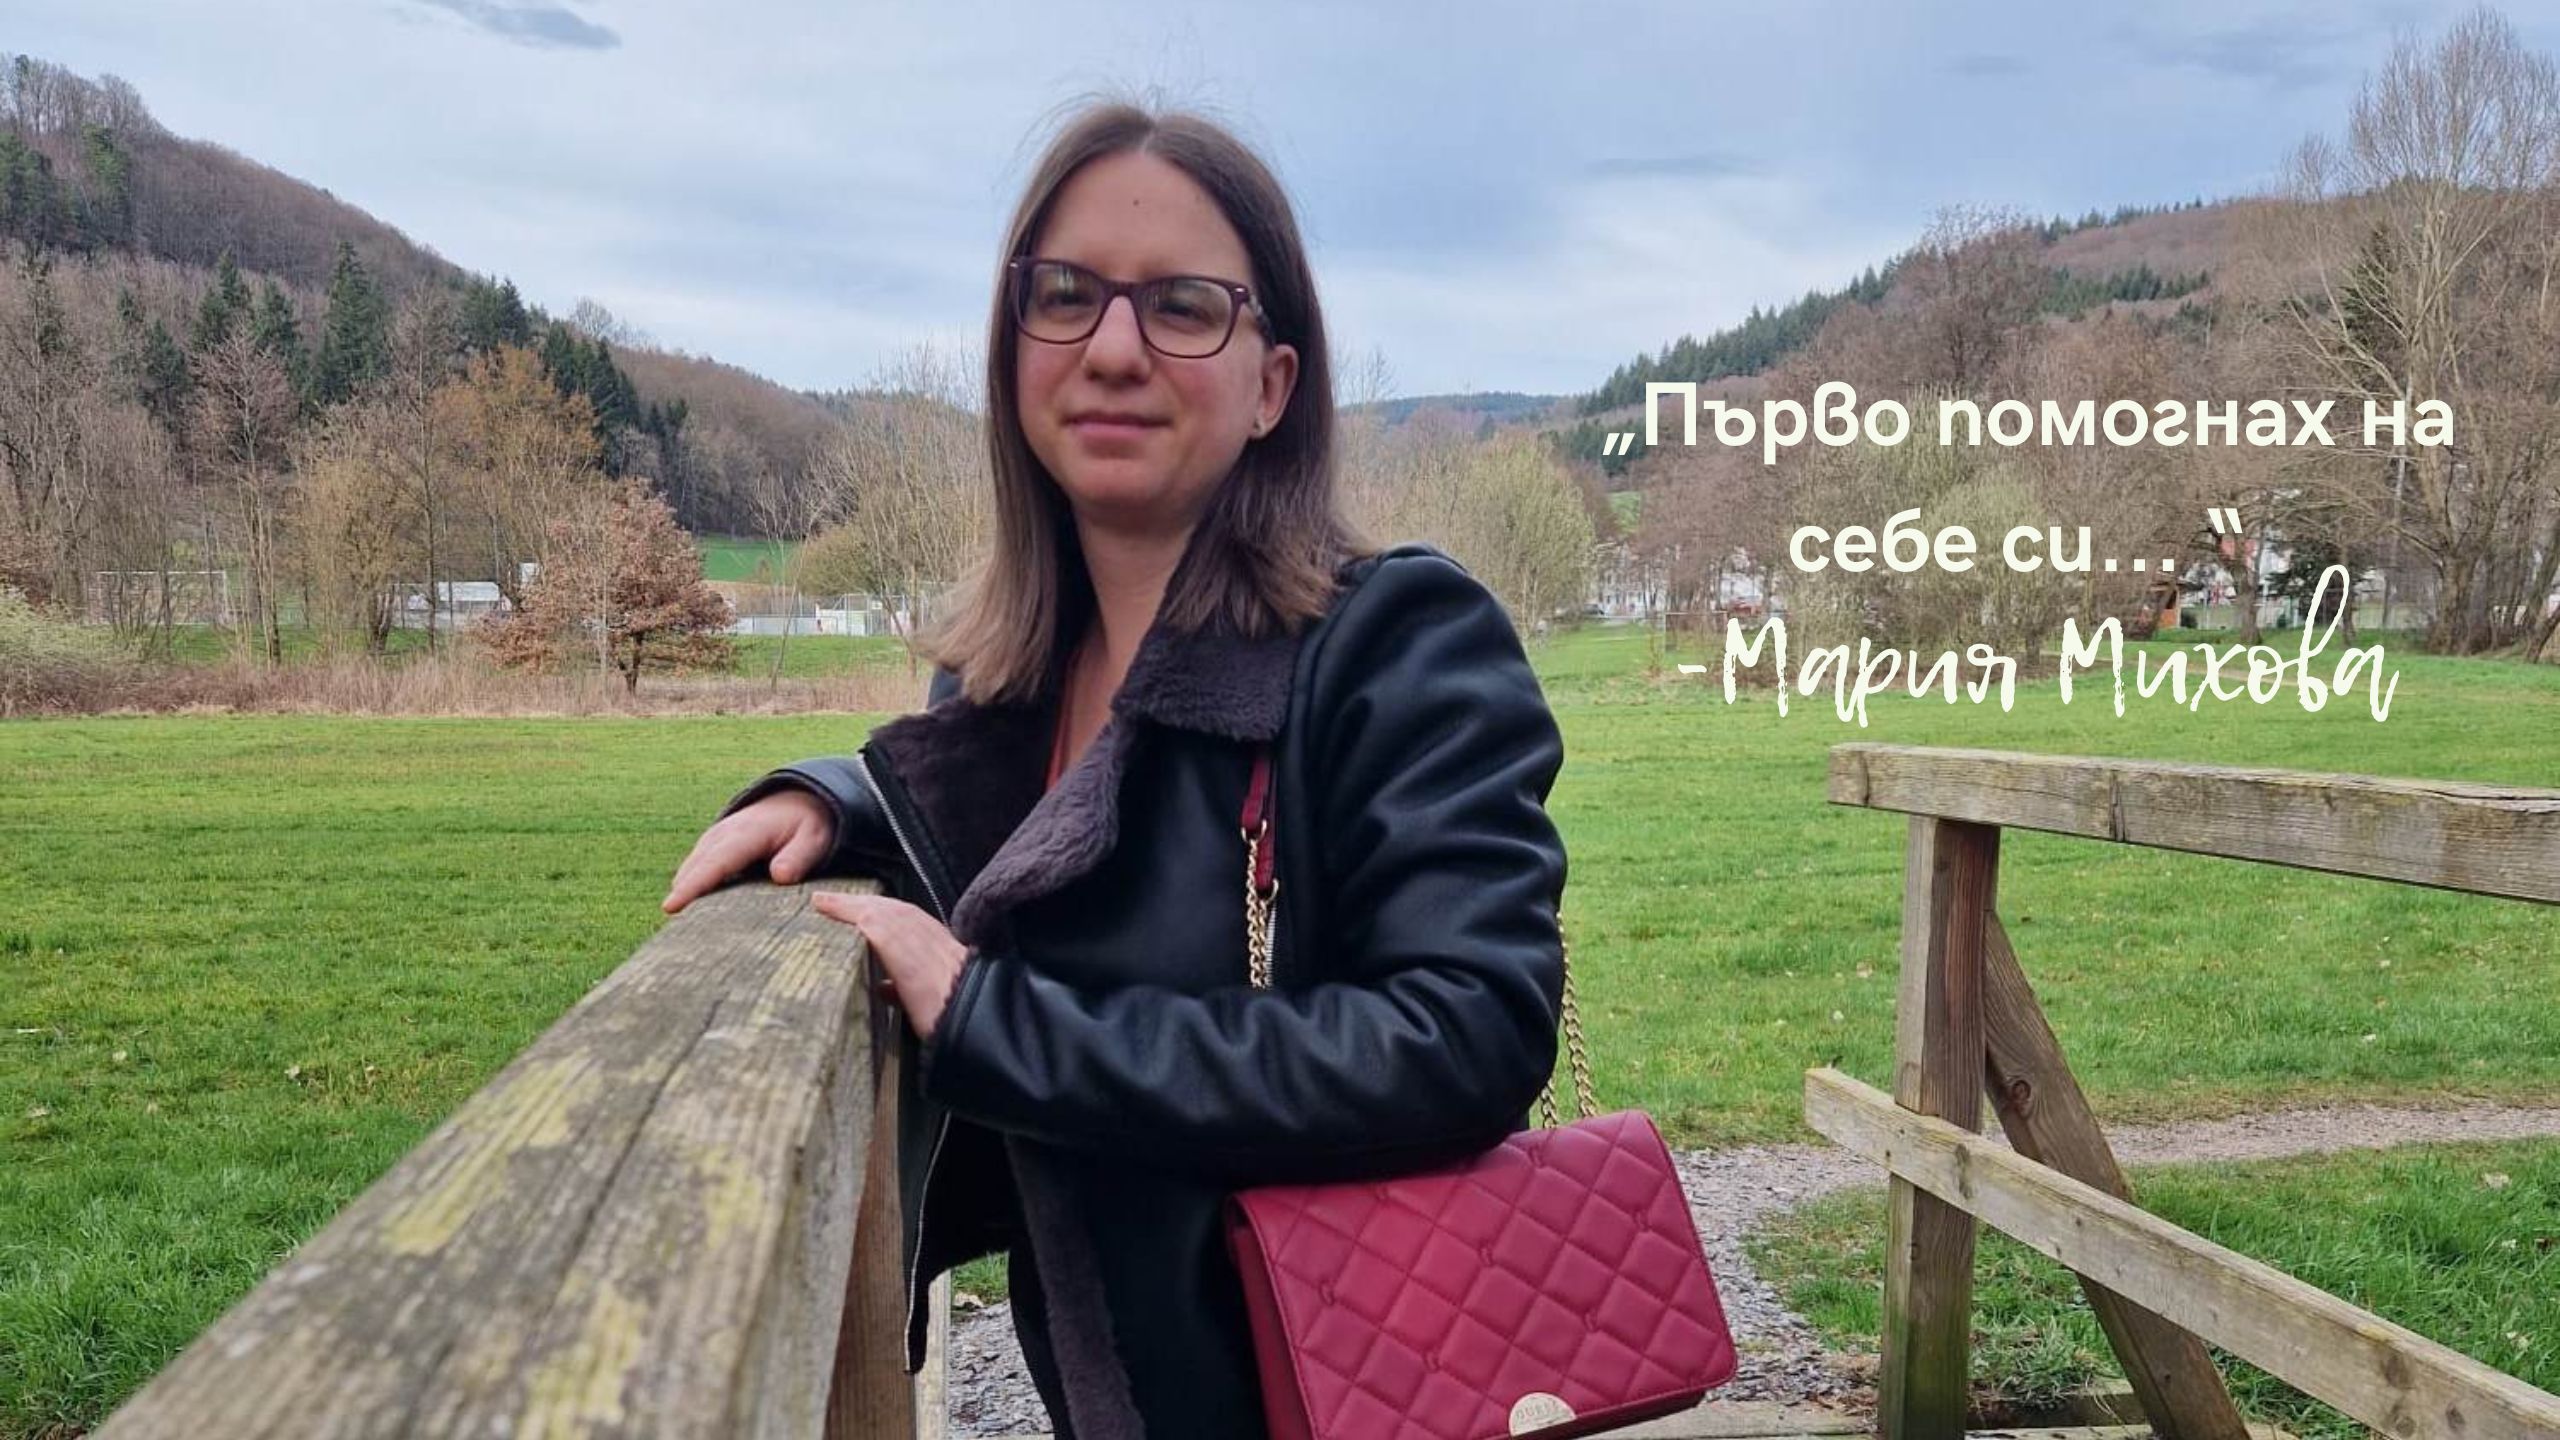 Мария Михова: първо помогнах на себе си, а сега помагам на другите